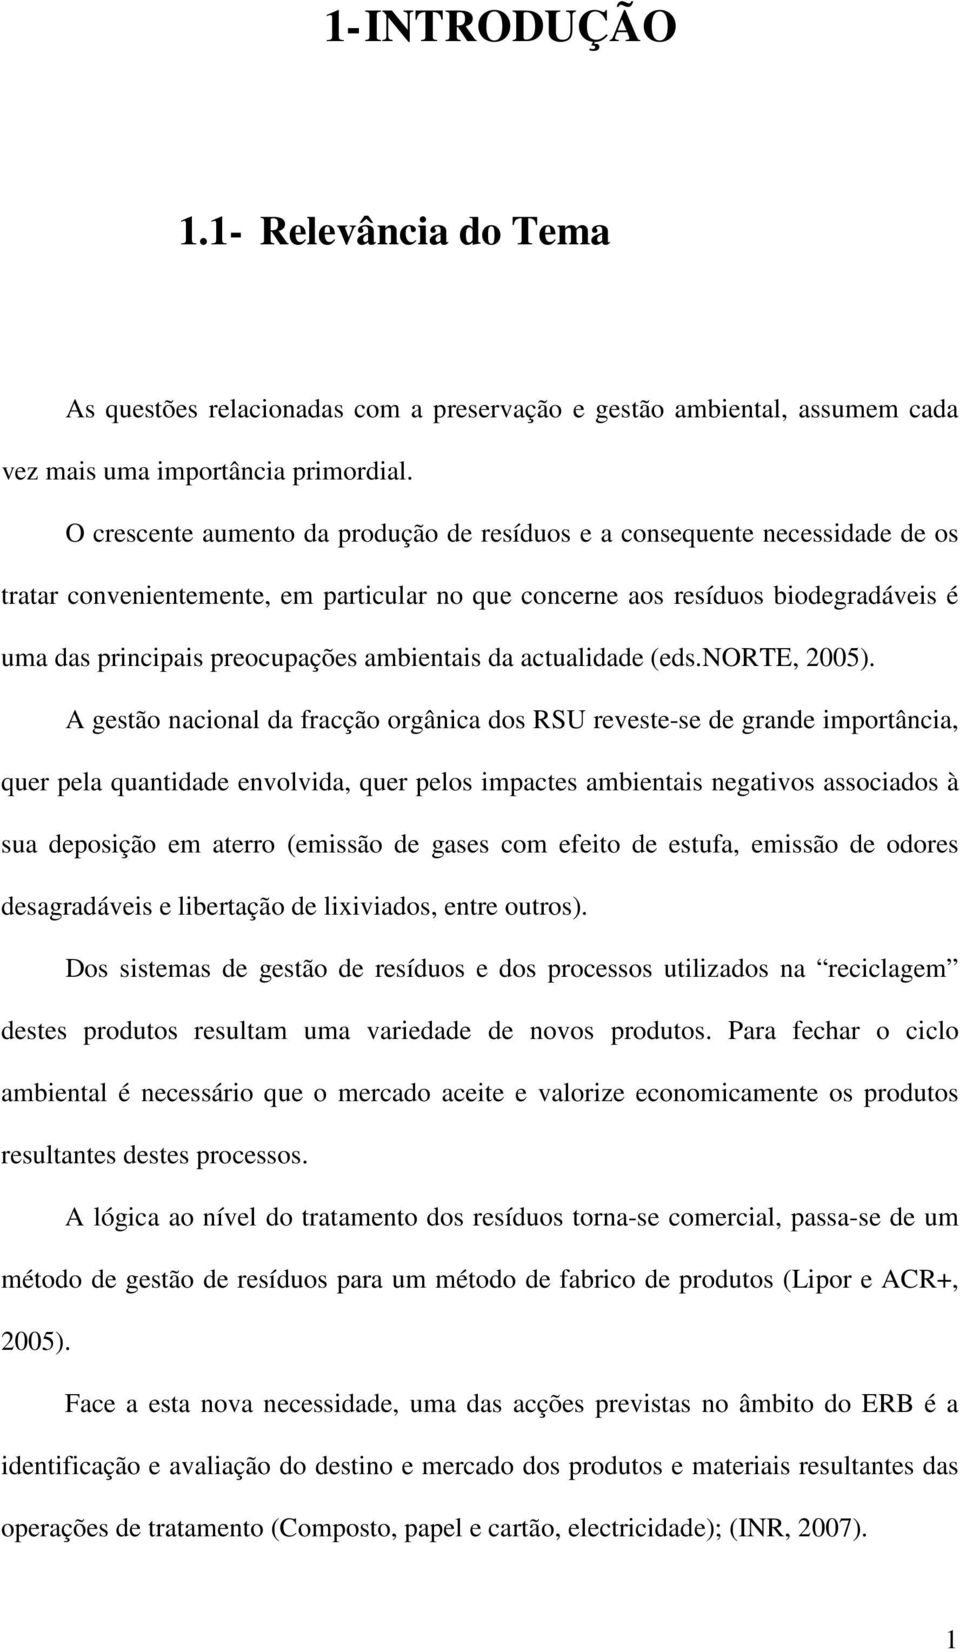 ambientais da actualidade (eds.norte, 2005).